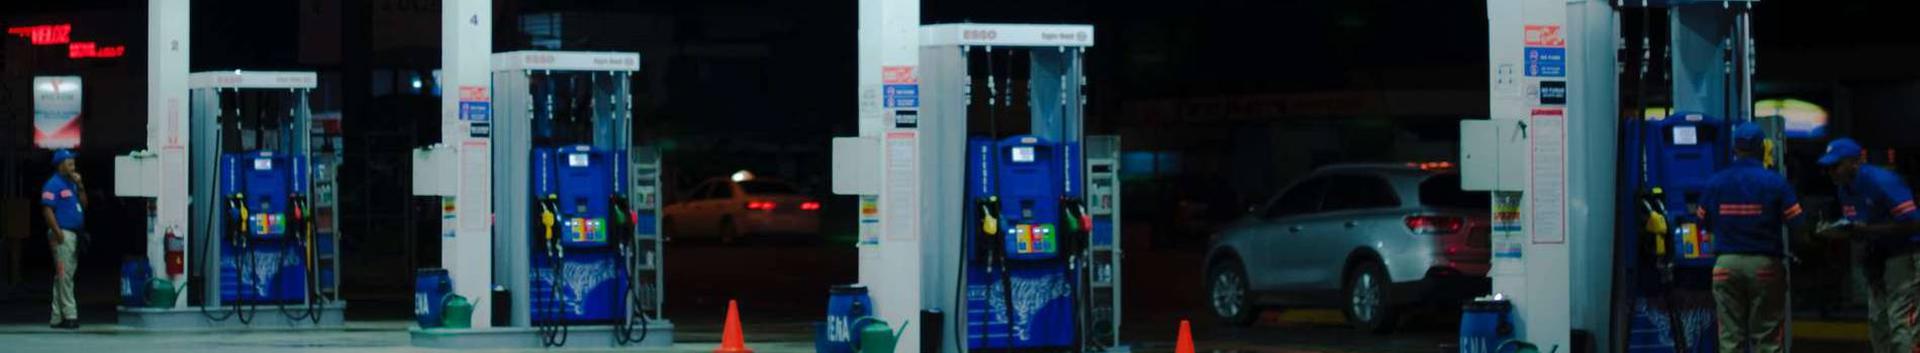 bensiinijaamad, bensiinijaamad ja tanklad, kütused, Vedelkütus, Jaekaubandus, Kütuse müük